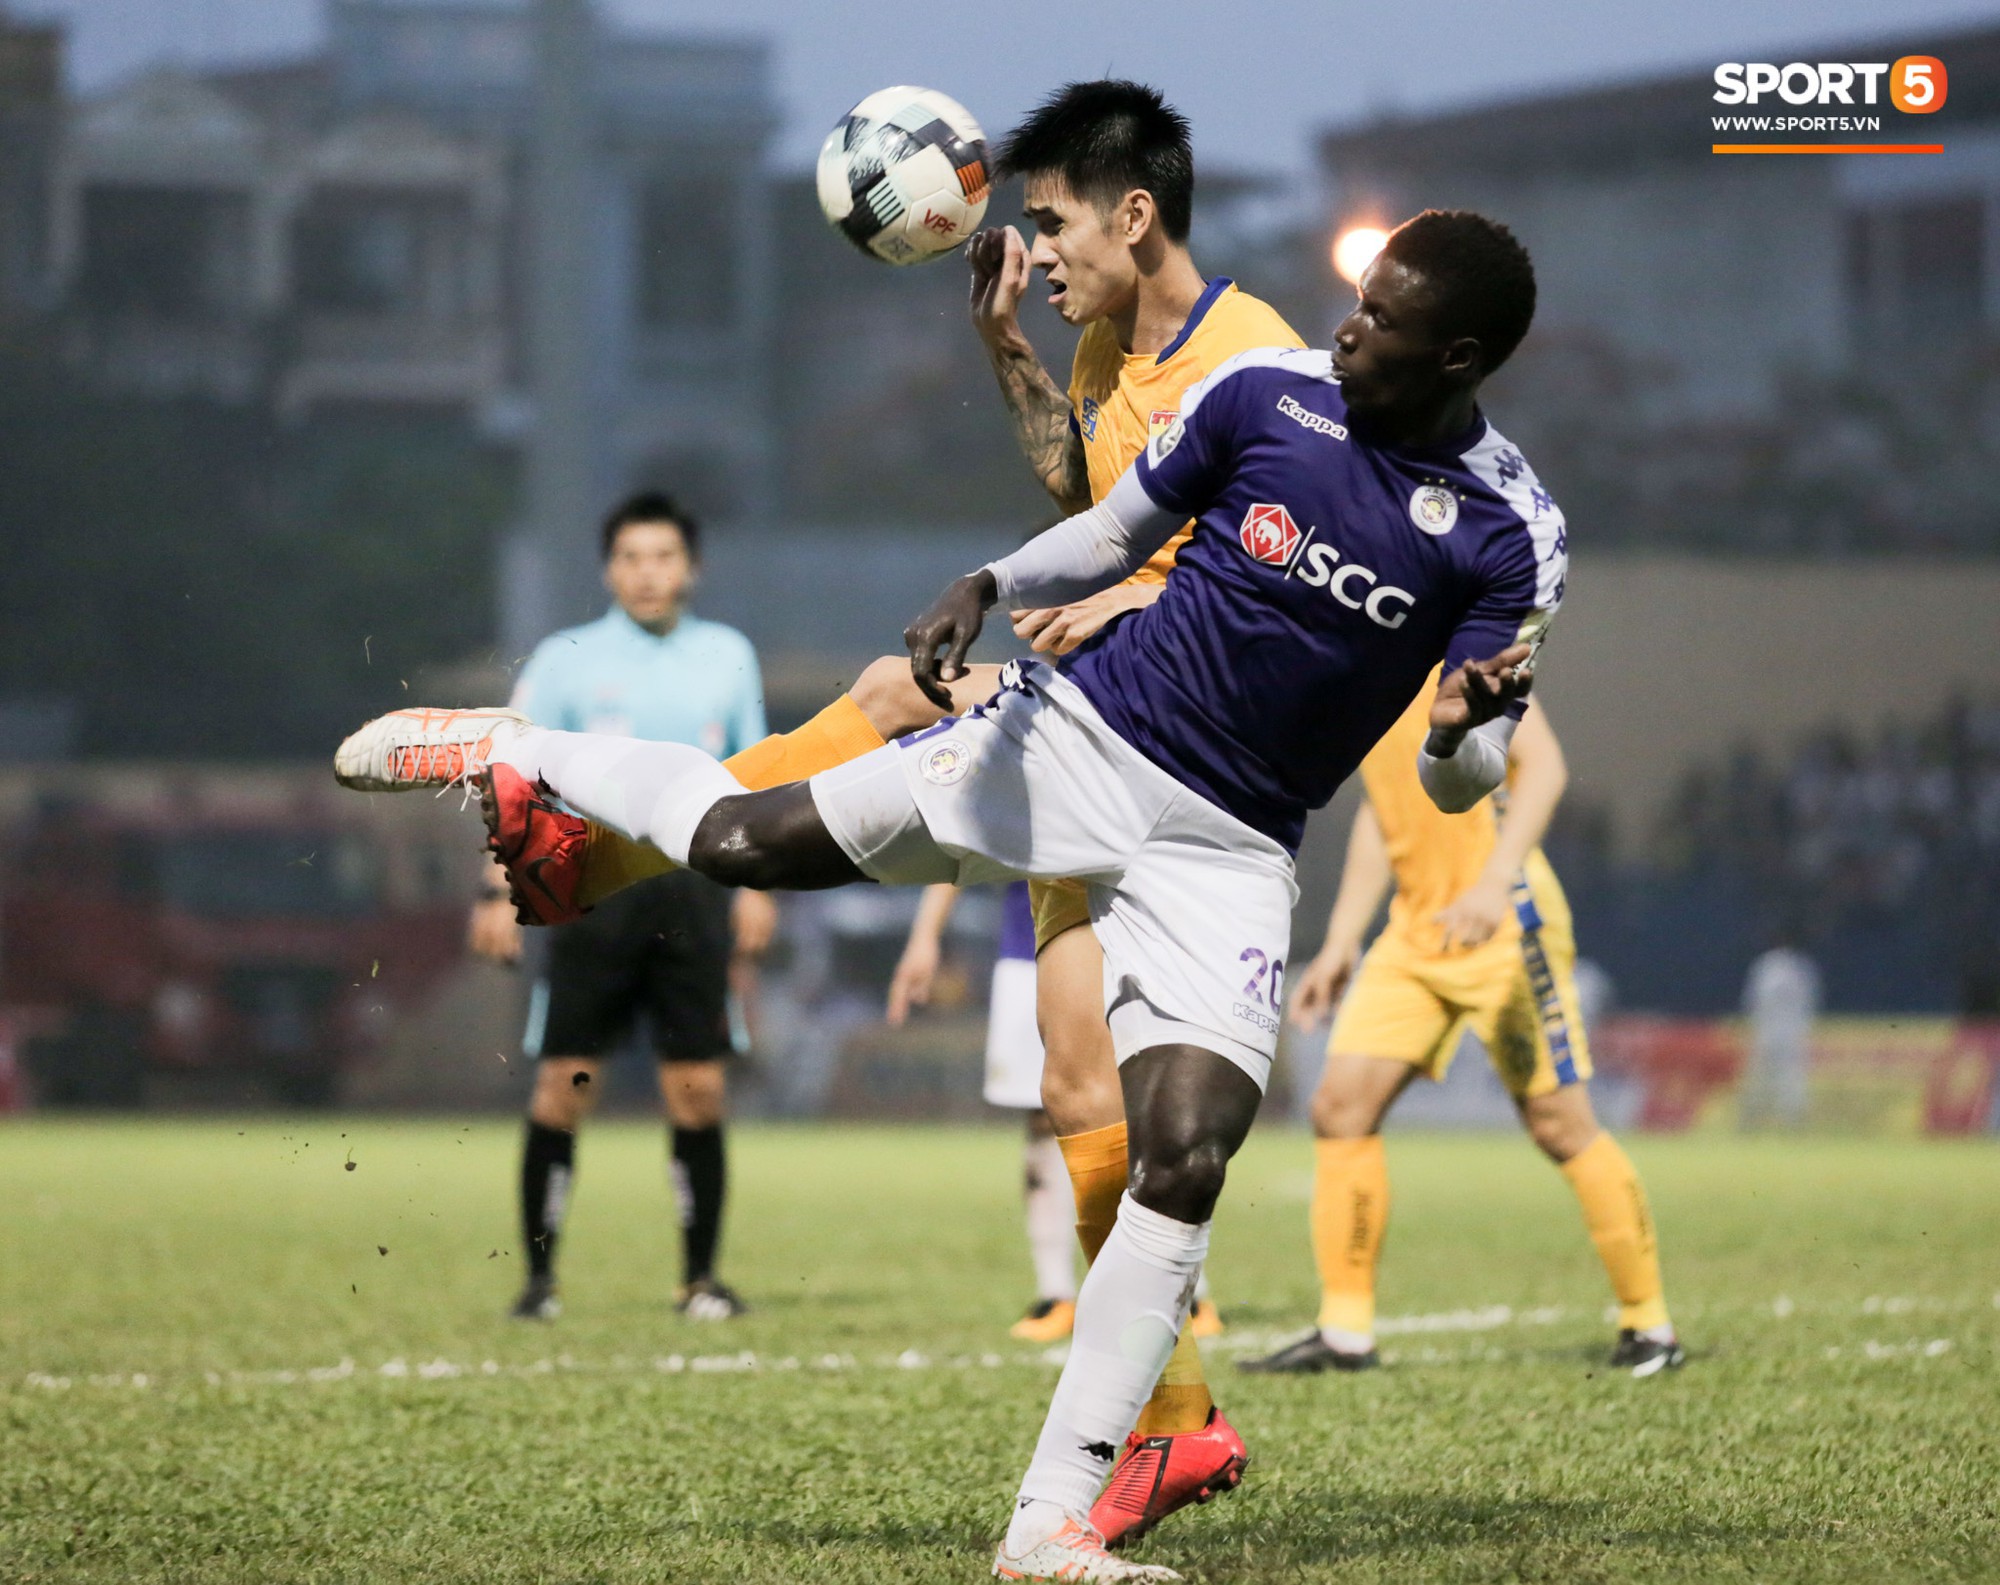 Bùi Tiến Dũng chán nản, không khí Hà Nội FC ảm đạm vì thua thảm trước CLB Thanh Hoá - Ảnh 11.